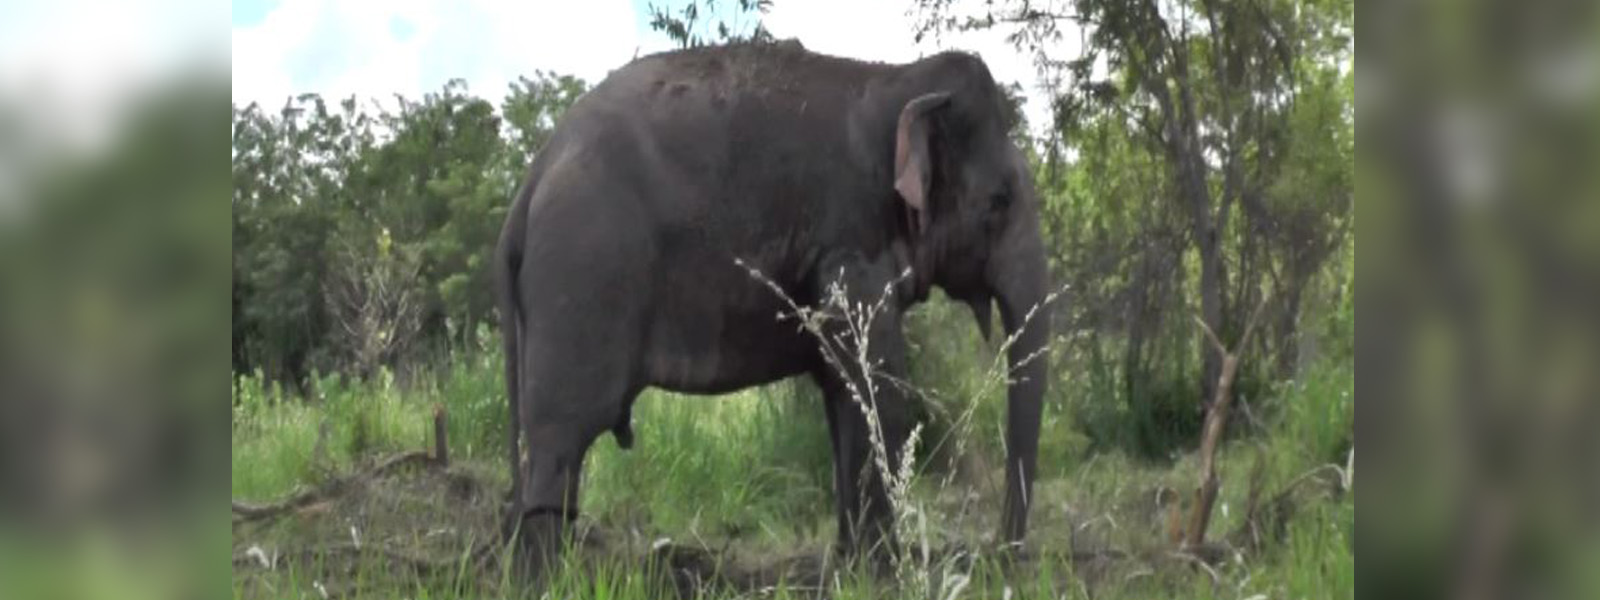 Wild elephant knocked by a jeep in Hambantota